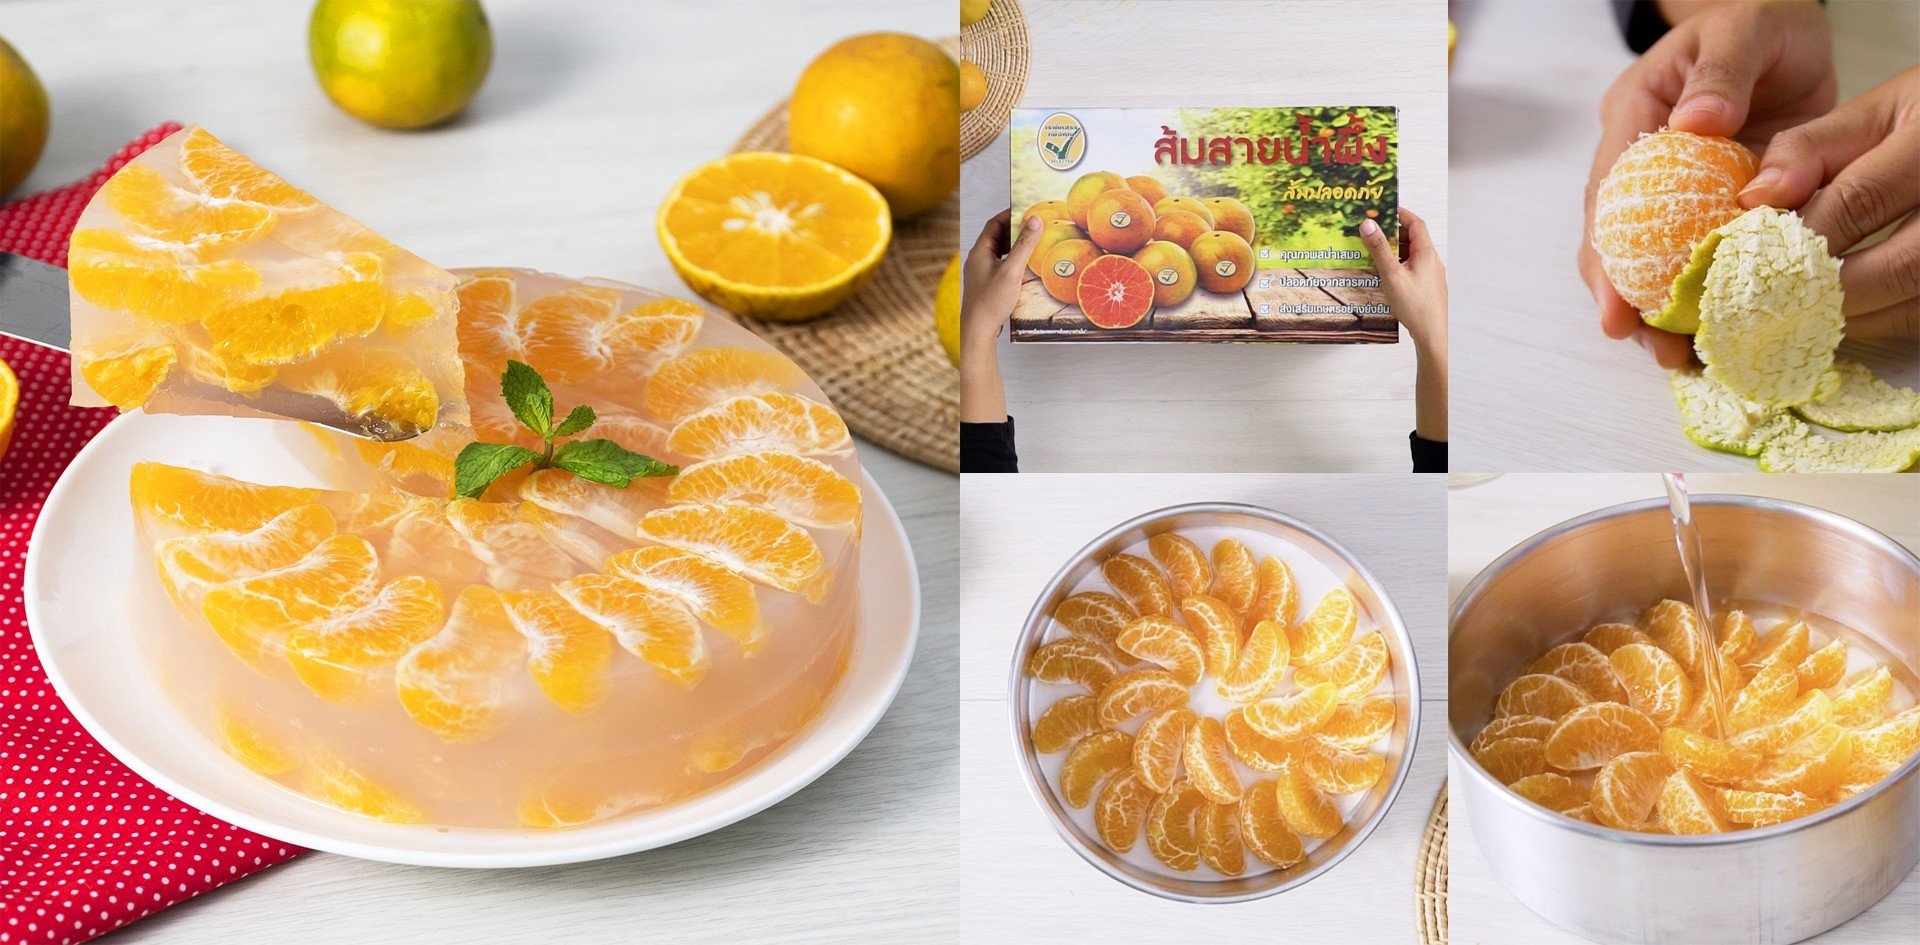 วิธีทำ “เค้กวุ้นส้ม” เมนูขนมหวาน วุ้นกรอบ ส้มหวานฉ่ำ เมนูอาหารว่าง